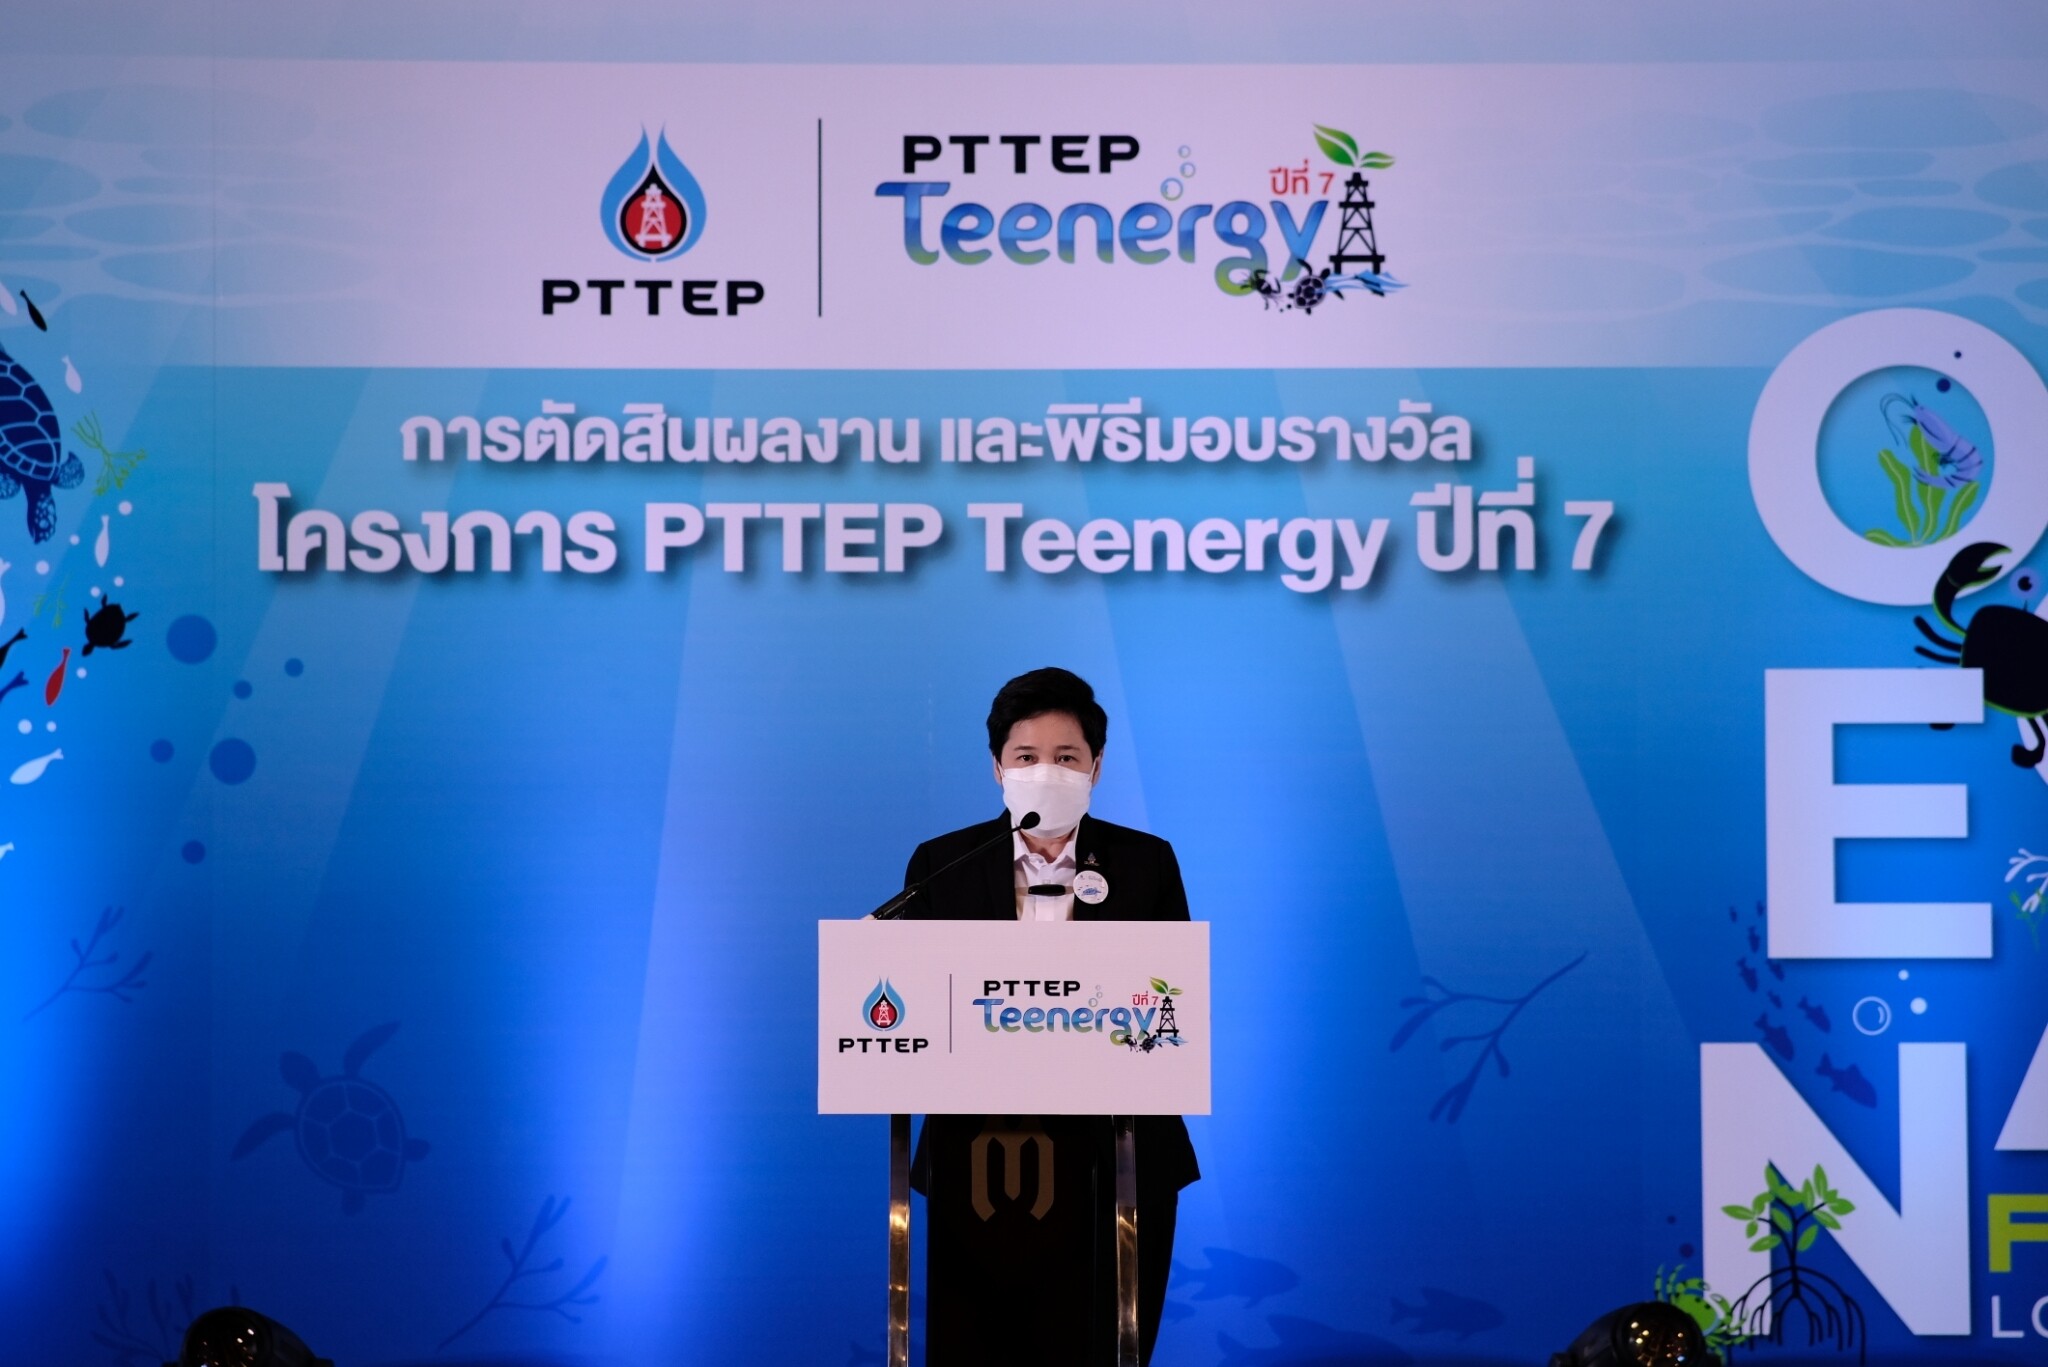 ปตท.สผ. ประกาศผลการตัดสินและมอบรางวัล  ผลงานนวัตกรรมและตราสัญลักษณ์ "ทะเลเพื่อชีวิต" (Ocean for Life)  โครงการ PTTEP Teenergy ปีที่ 7 ส่งเสริมเยาวชนร่วมอนุรักษ์ทะเลไทย